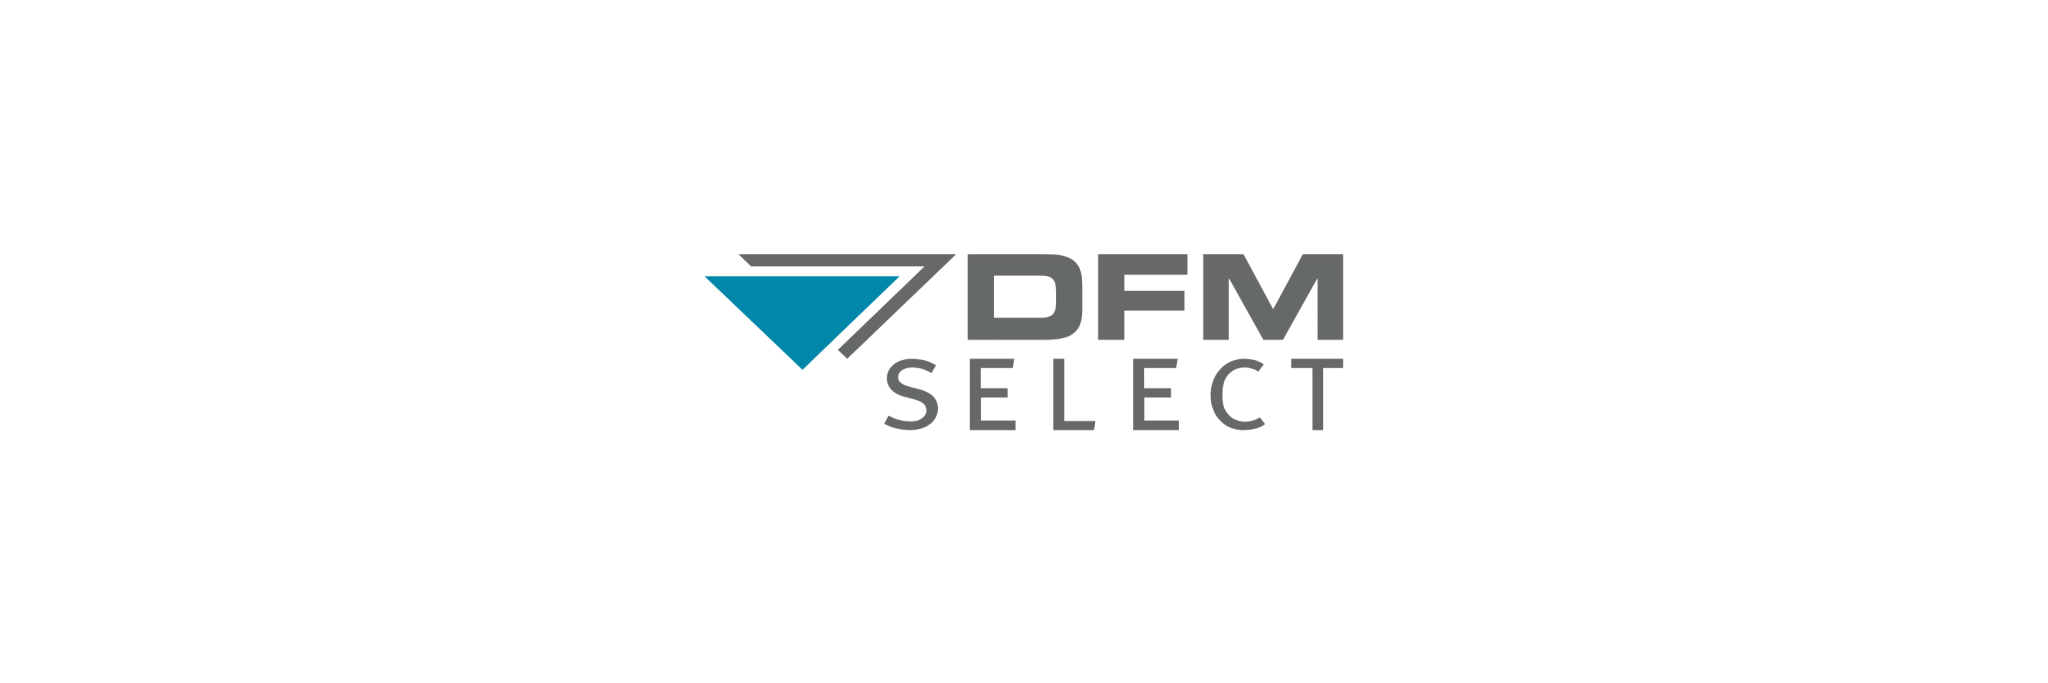 DFM-Select - Klenk Maschinenhandel